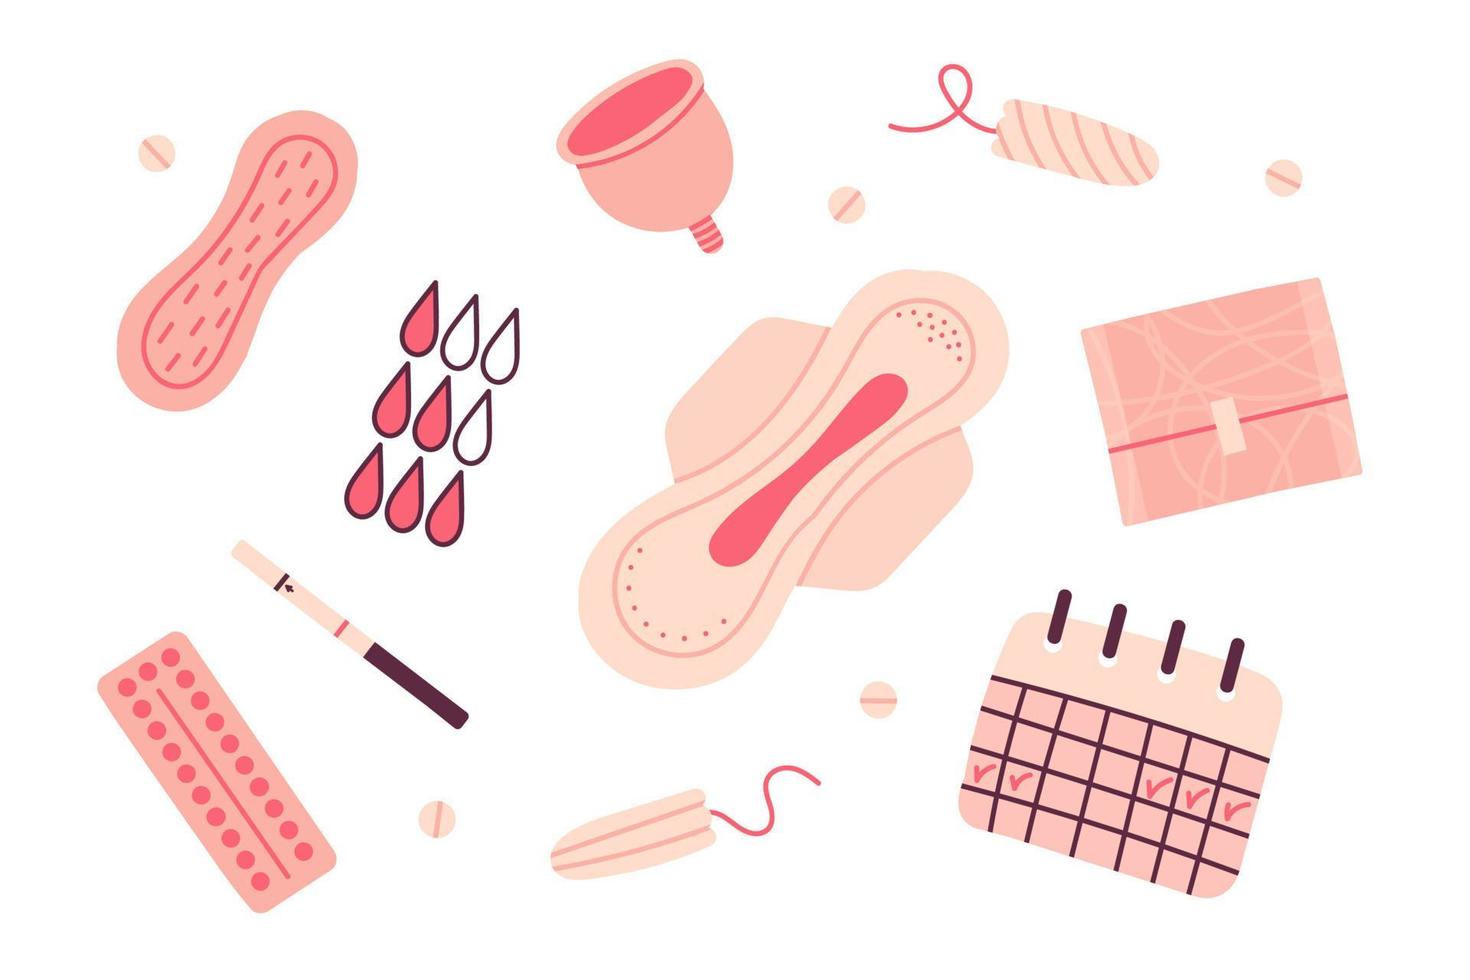 conjunto de plano mano dibujado femenino higiene elementos. colección de De las mujeres menstrual período artículos - menstrual taza, tampones, almohadillas, el embarazo pruebas vector